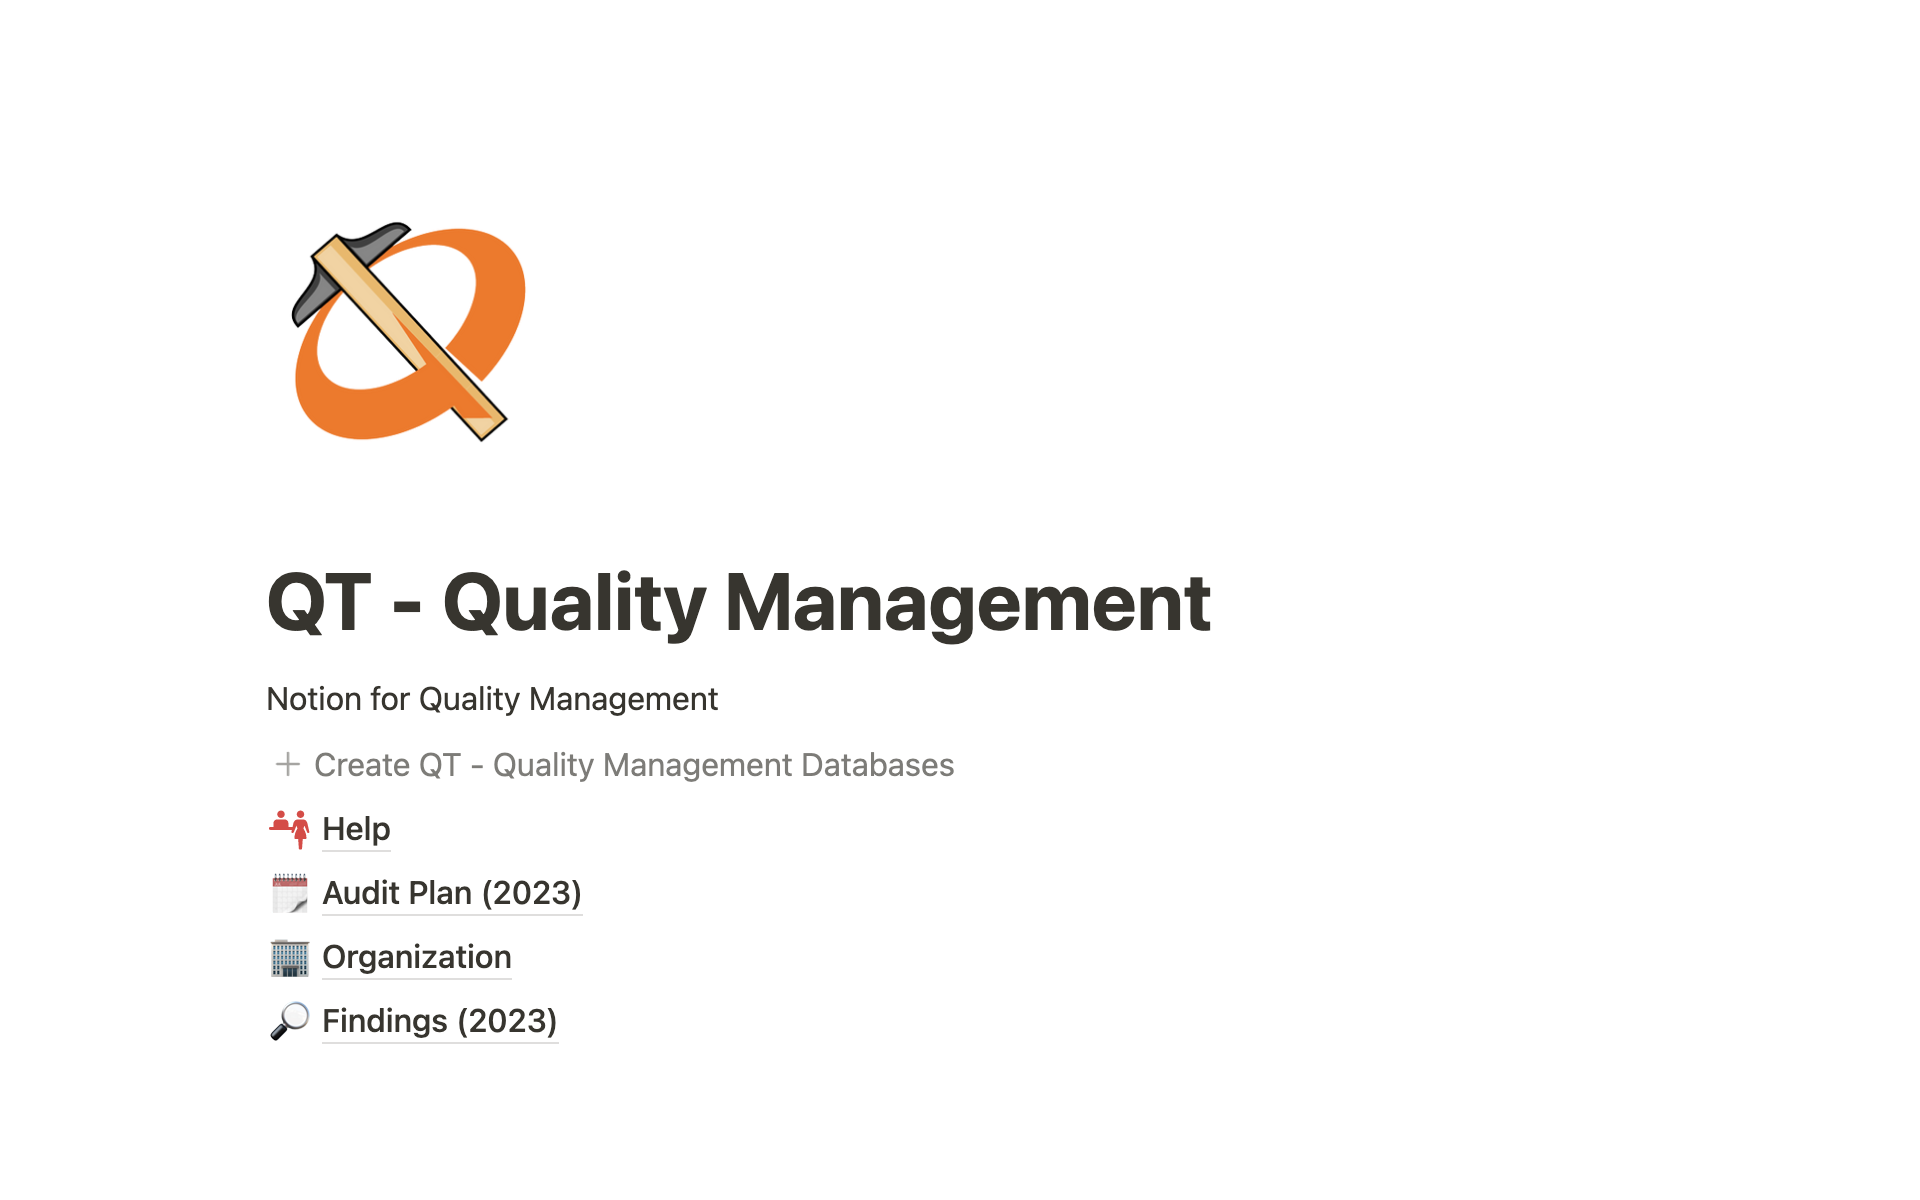 Vista previa de plantilla para QT - Quality Management